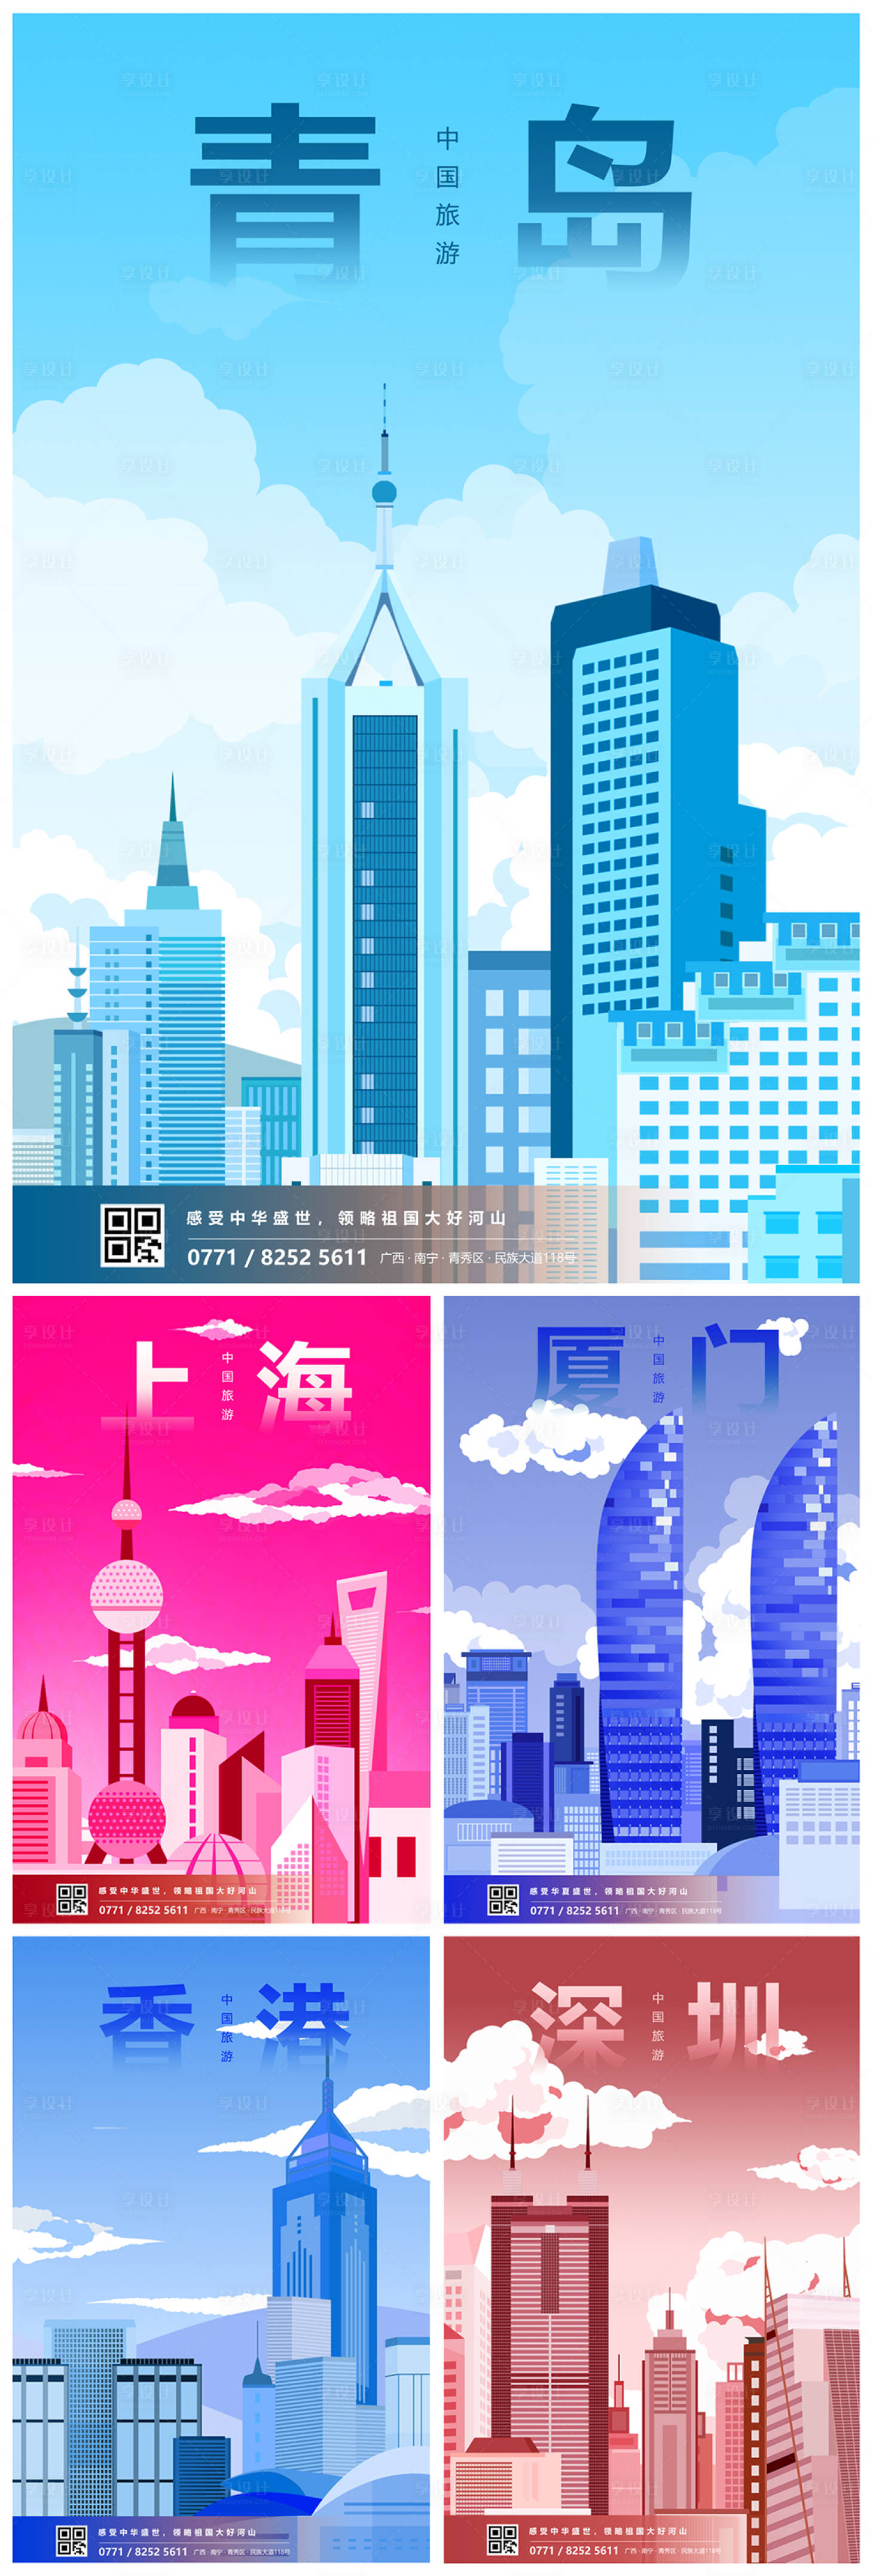 中国旅游城市插画系列海报其他色psd广告设计作品素材